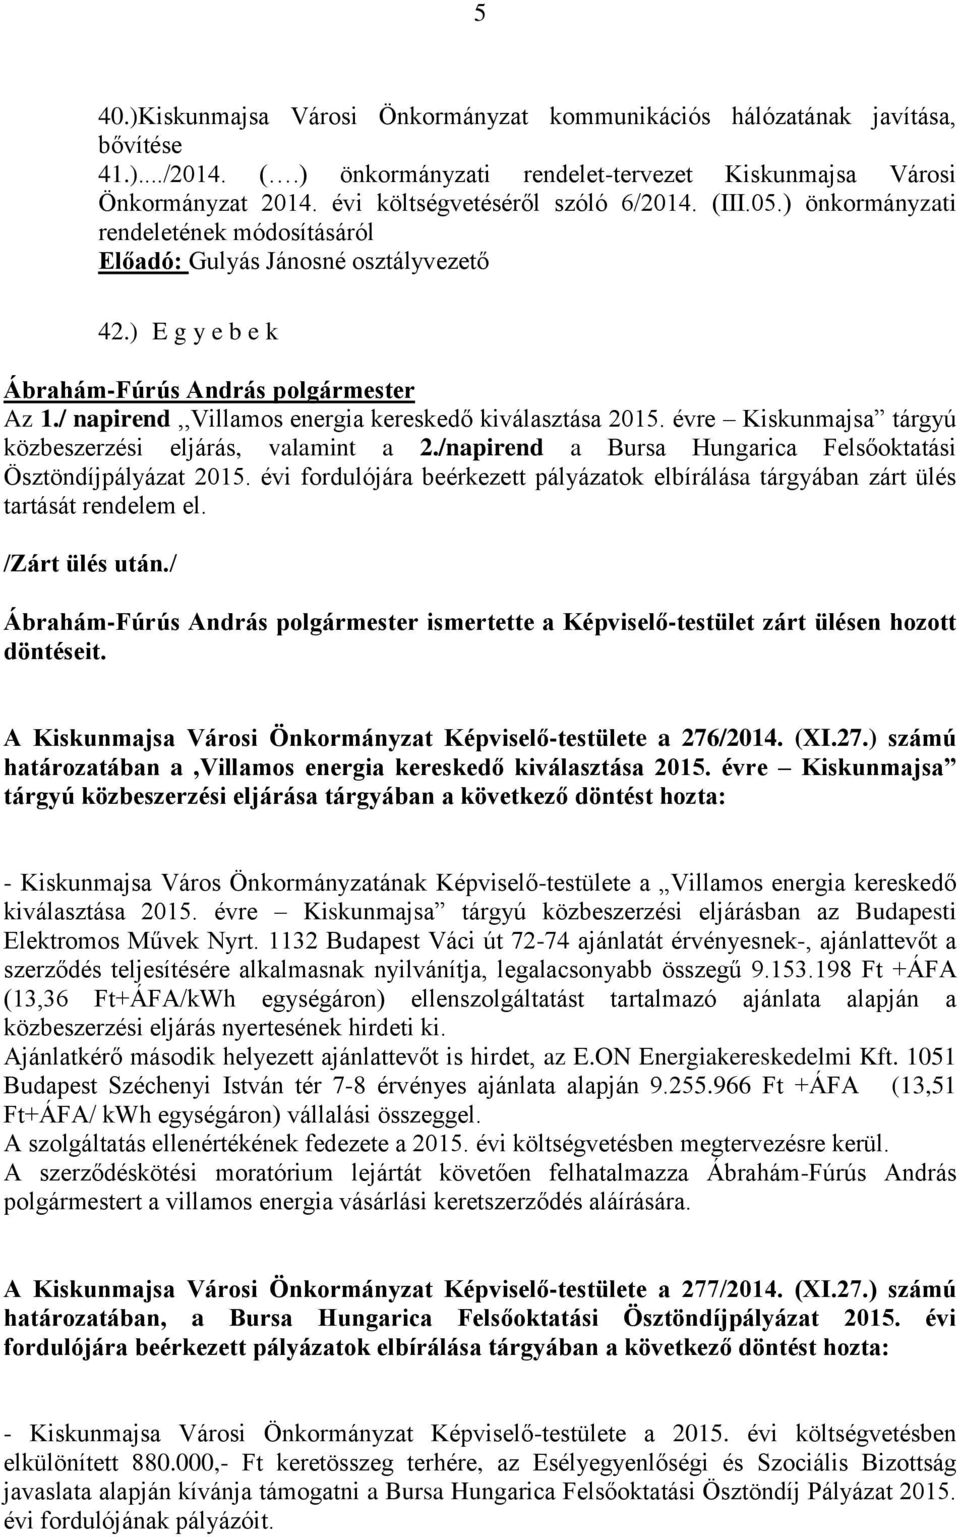 / napirend,,villamos energia kereskedő kiválasztása 2015. évre Kiskunmajsa tárgyú közbeszerzési eljárás, valamint a 2./napirend a Bursa Hungarica Felsőoktatási Ösztöndíjpályázat 2015.